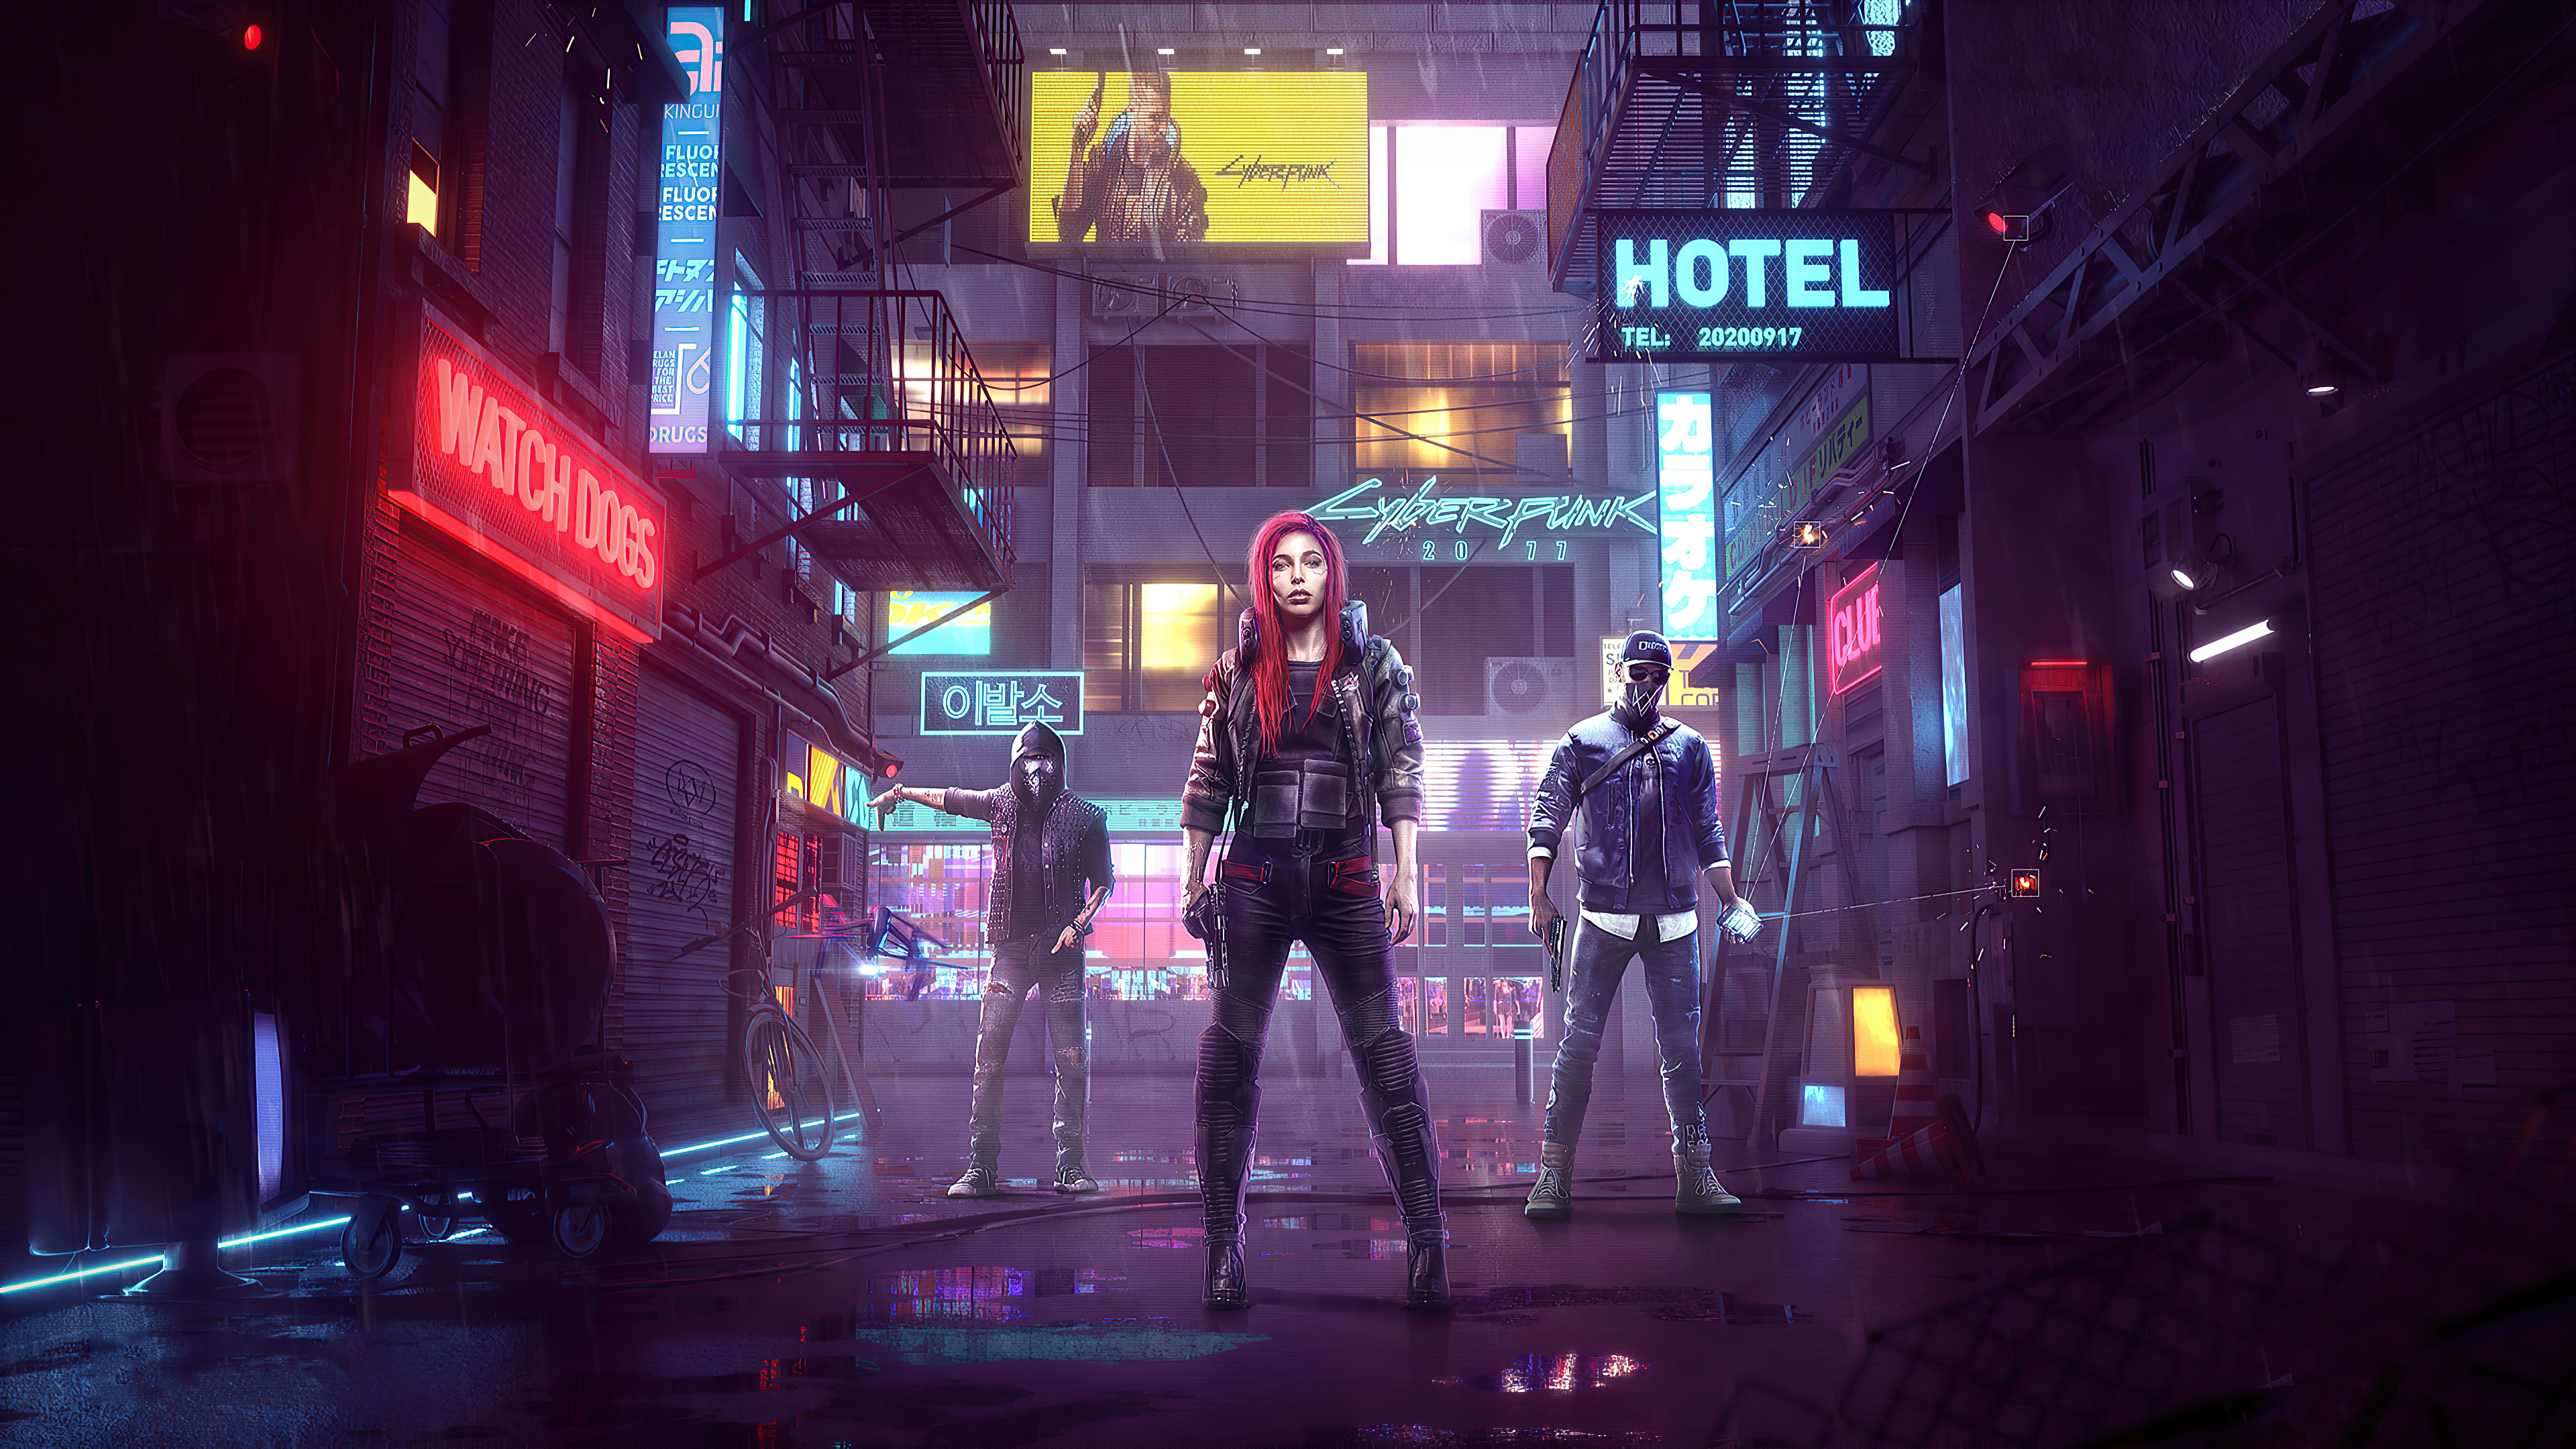 Cyberpunk 2077 wallpapers for desktop, download free Cyberpunk